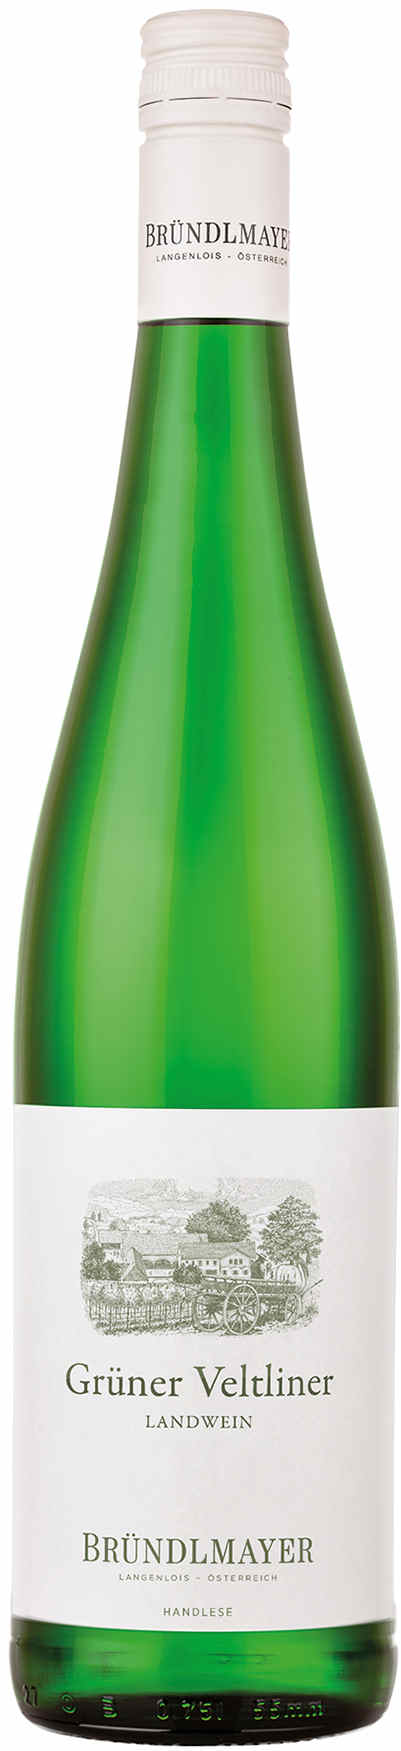 Landwein | Grüner Bründlmayer | trocken Vinoscout | Veltliner 2021 Weingut Weißwein |